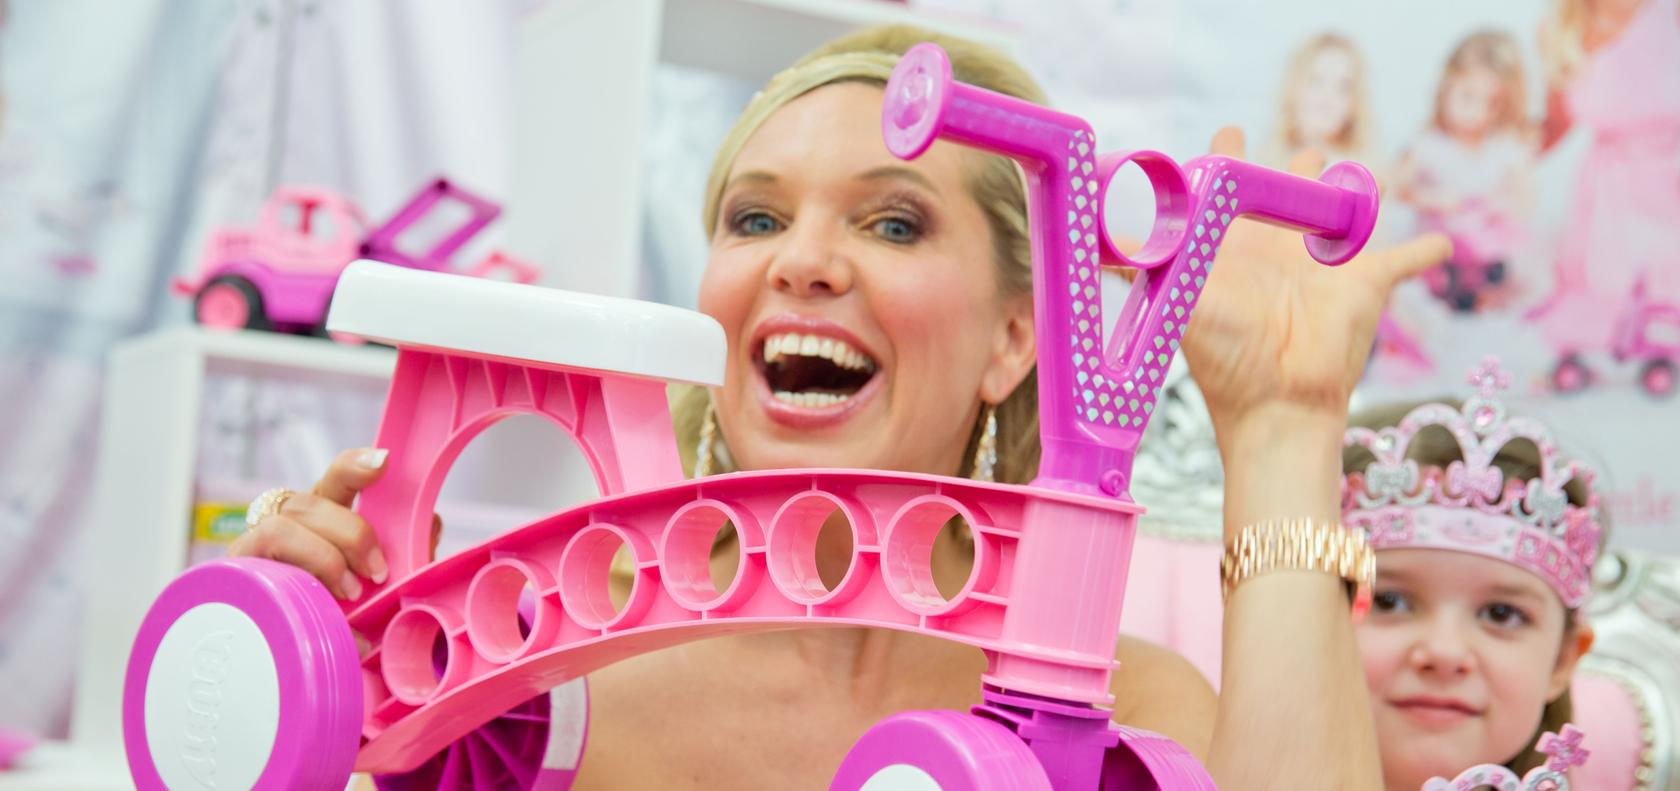 Maja Synke Prinzessin von Hohenzollern präsentiert ihre Kreativ-Spielzeug-Kollektion 2014 während der Neuheitenschau zur 65. Internationalen Spielwarenmesse.